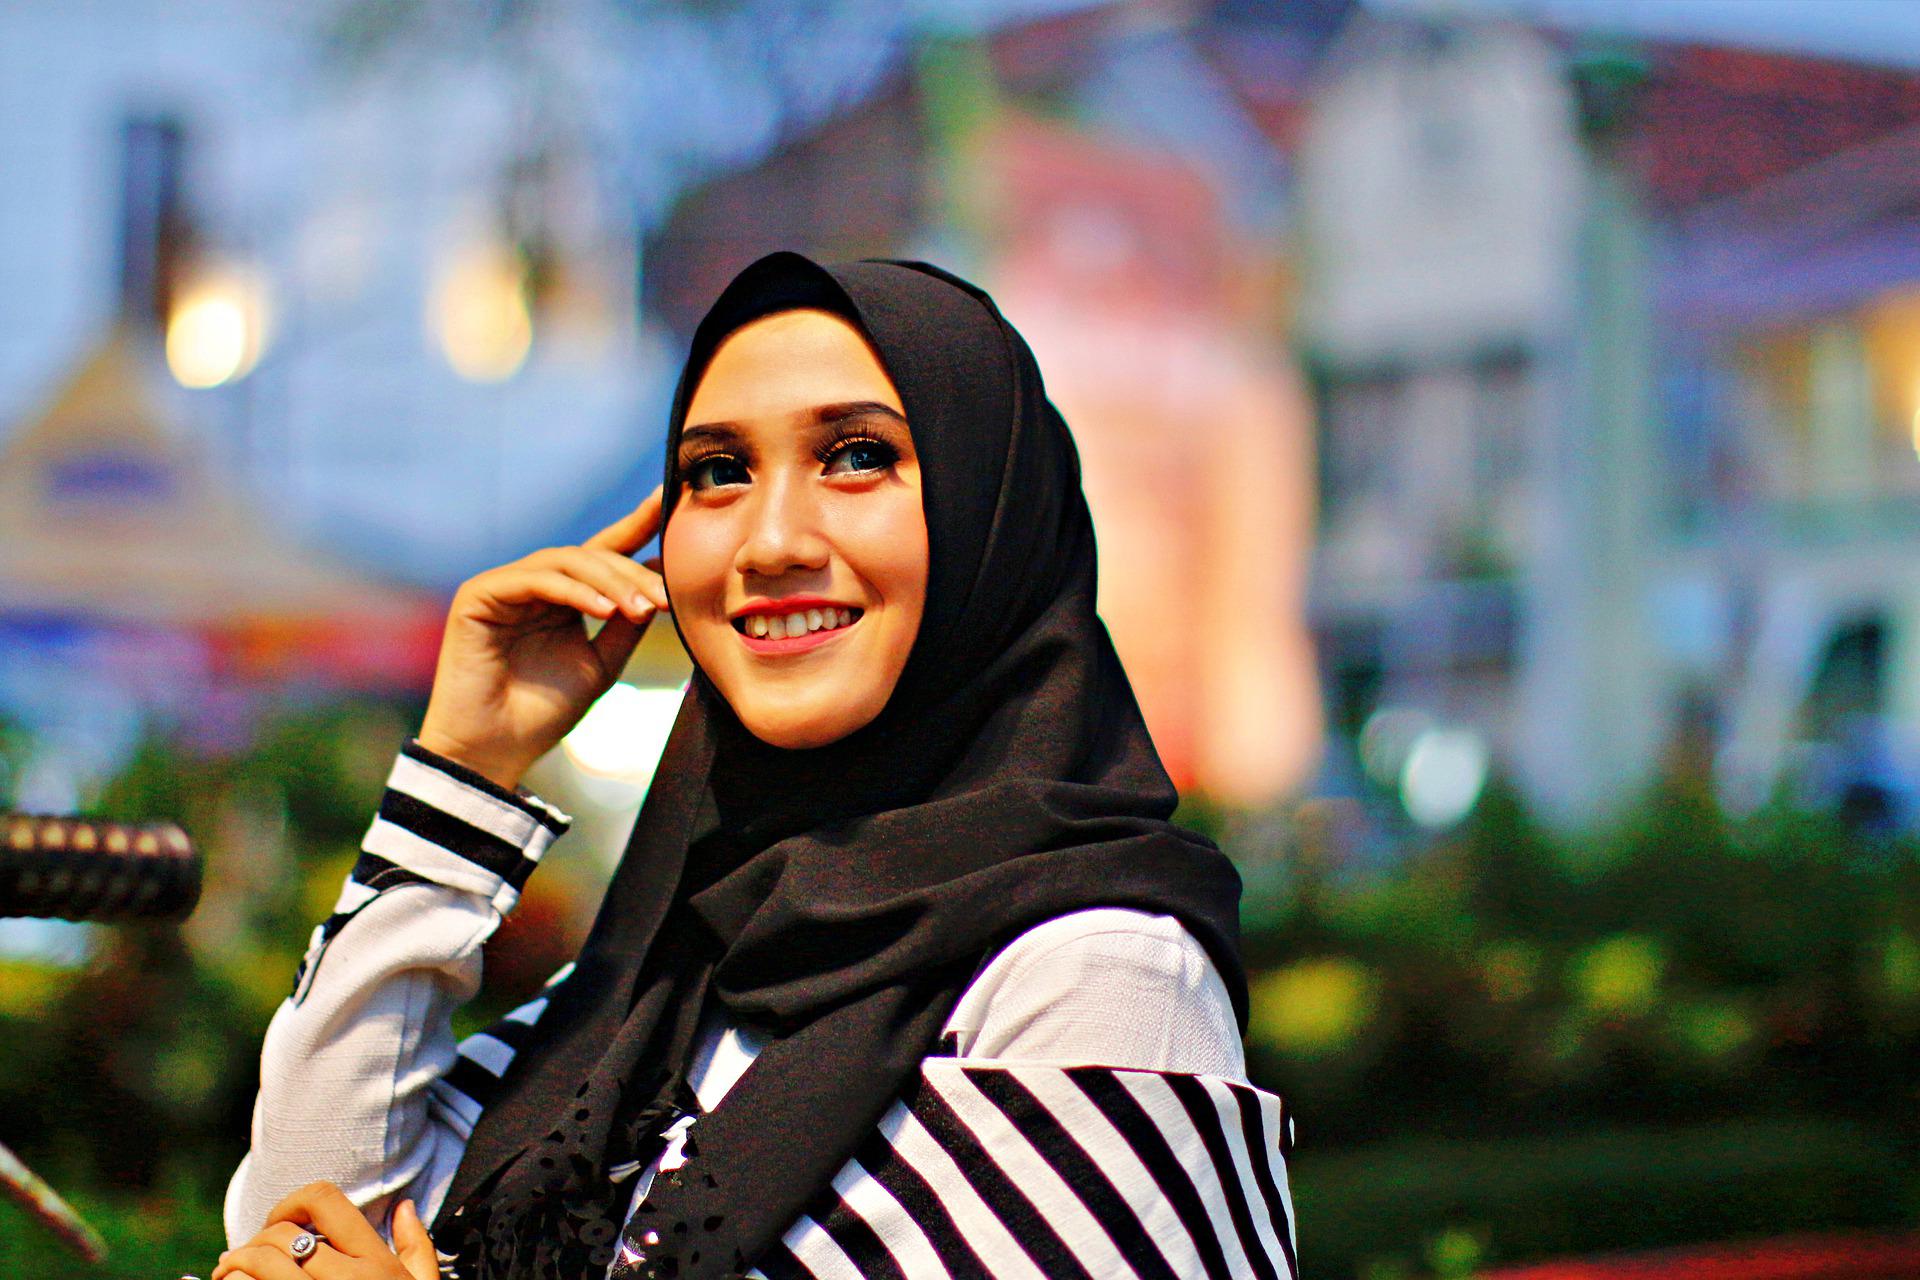 Hoogte voor de helft Goot Waar mooie hoofddoeken kopen? Top 10 hijab webshops - Yes Girl